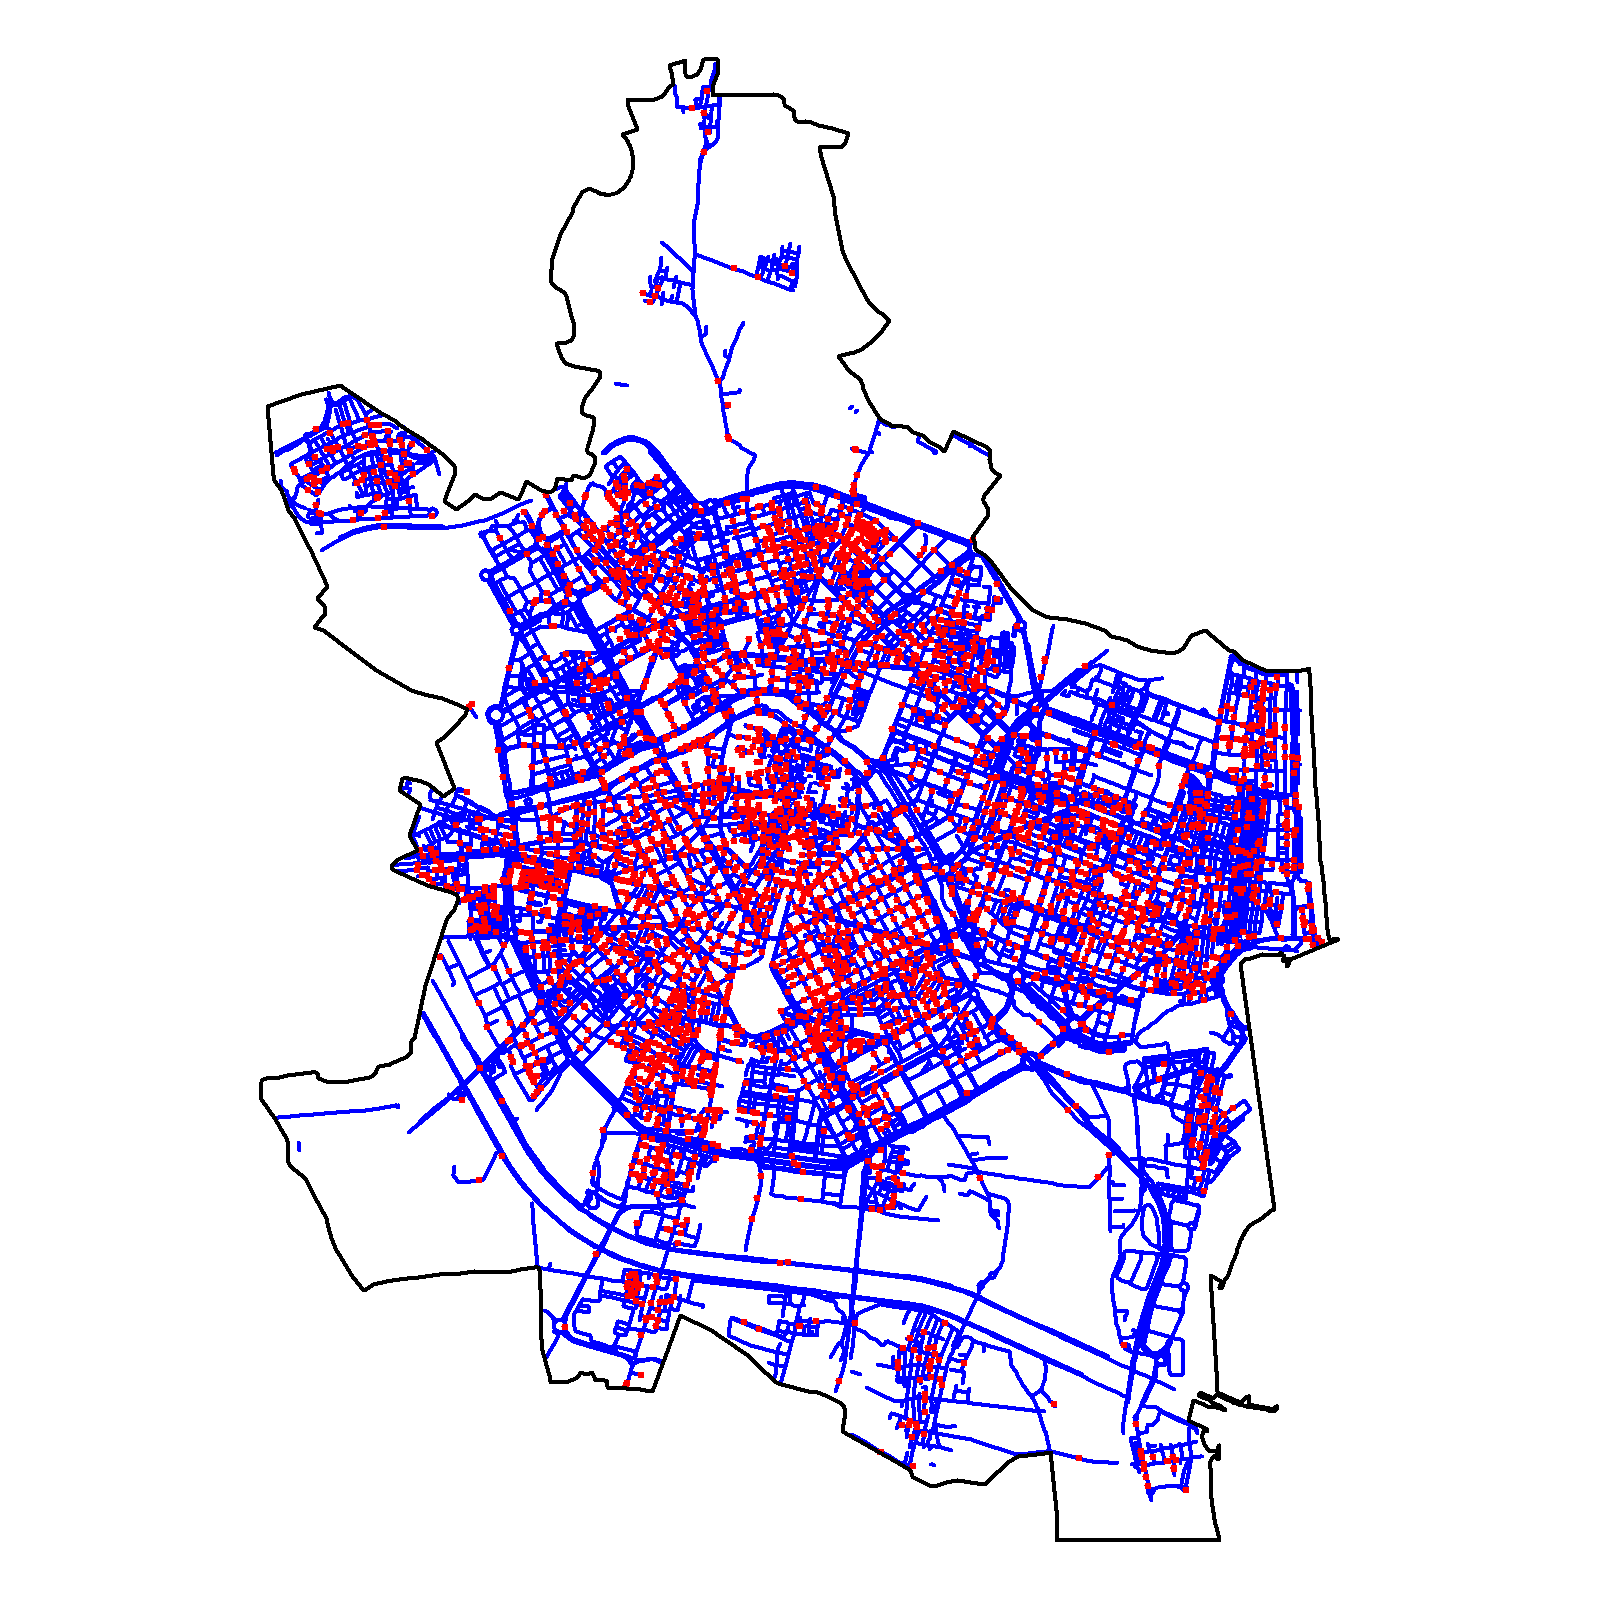 Intensidad estimada por función núcleo, usando el  estimador de borde uniforme corregido (izquierda), para los datos de delitos (puntos rojos) en Valencia durante 2020 (derecha). Los valores de intensidad muestran el número de crímenes por km lineal.